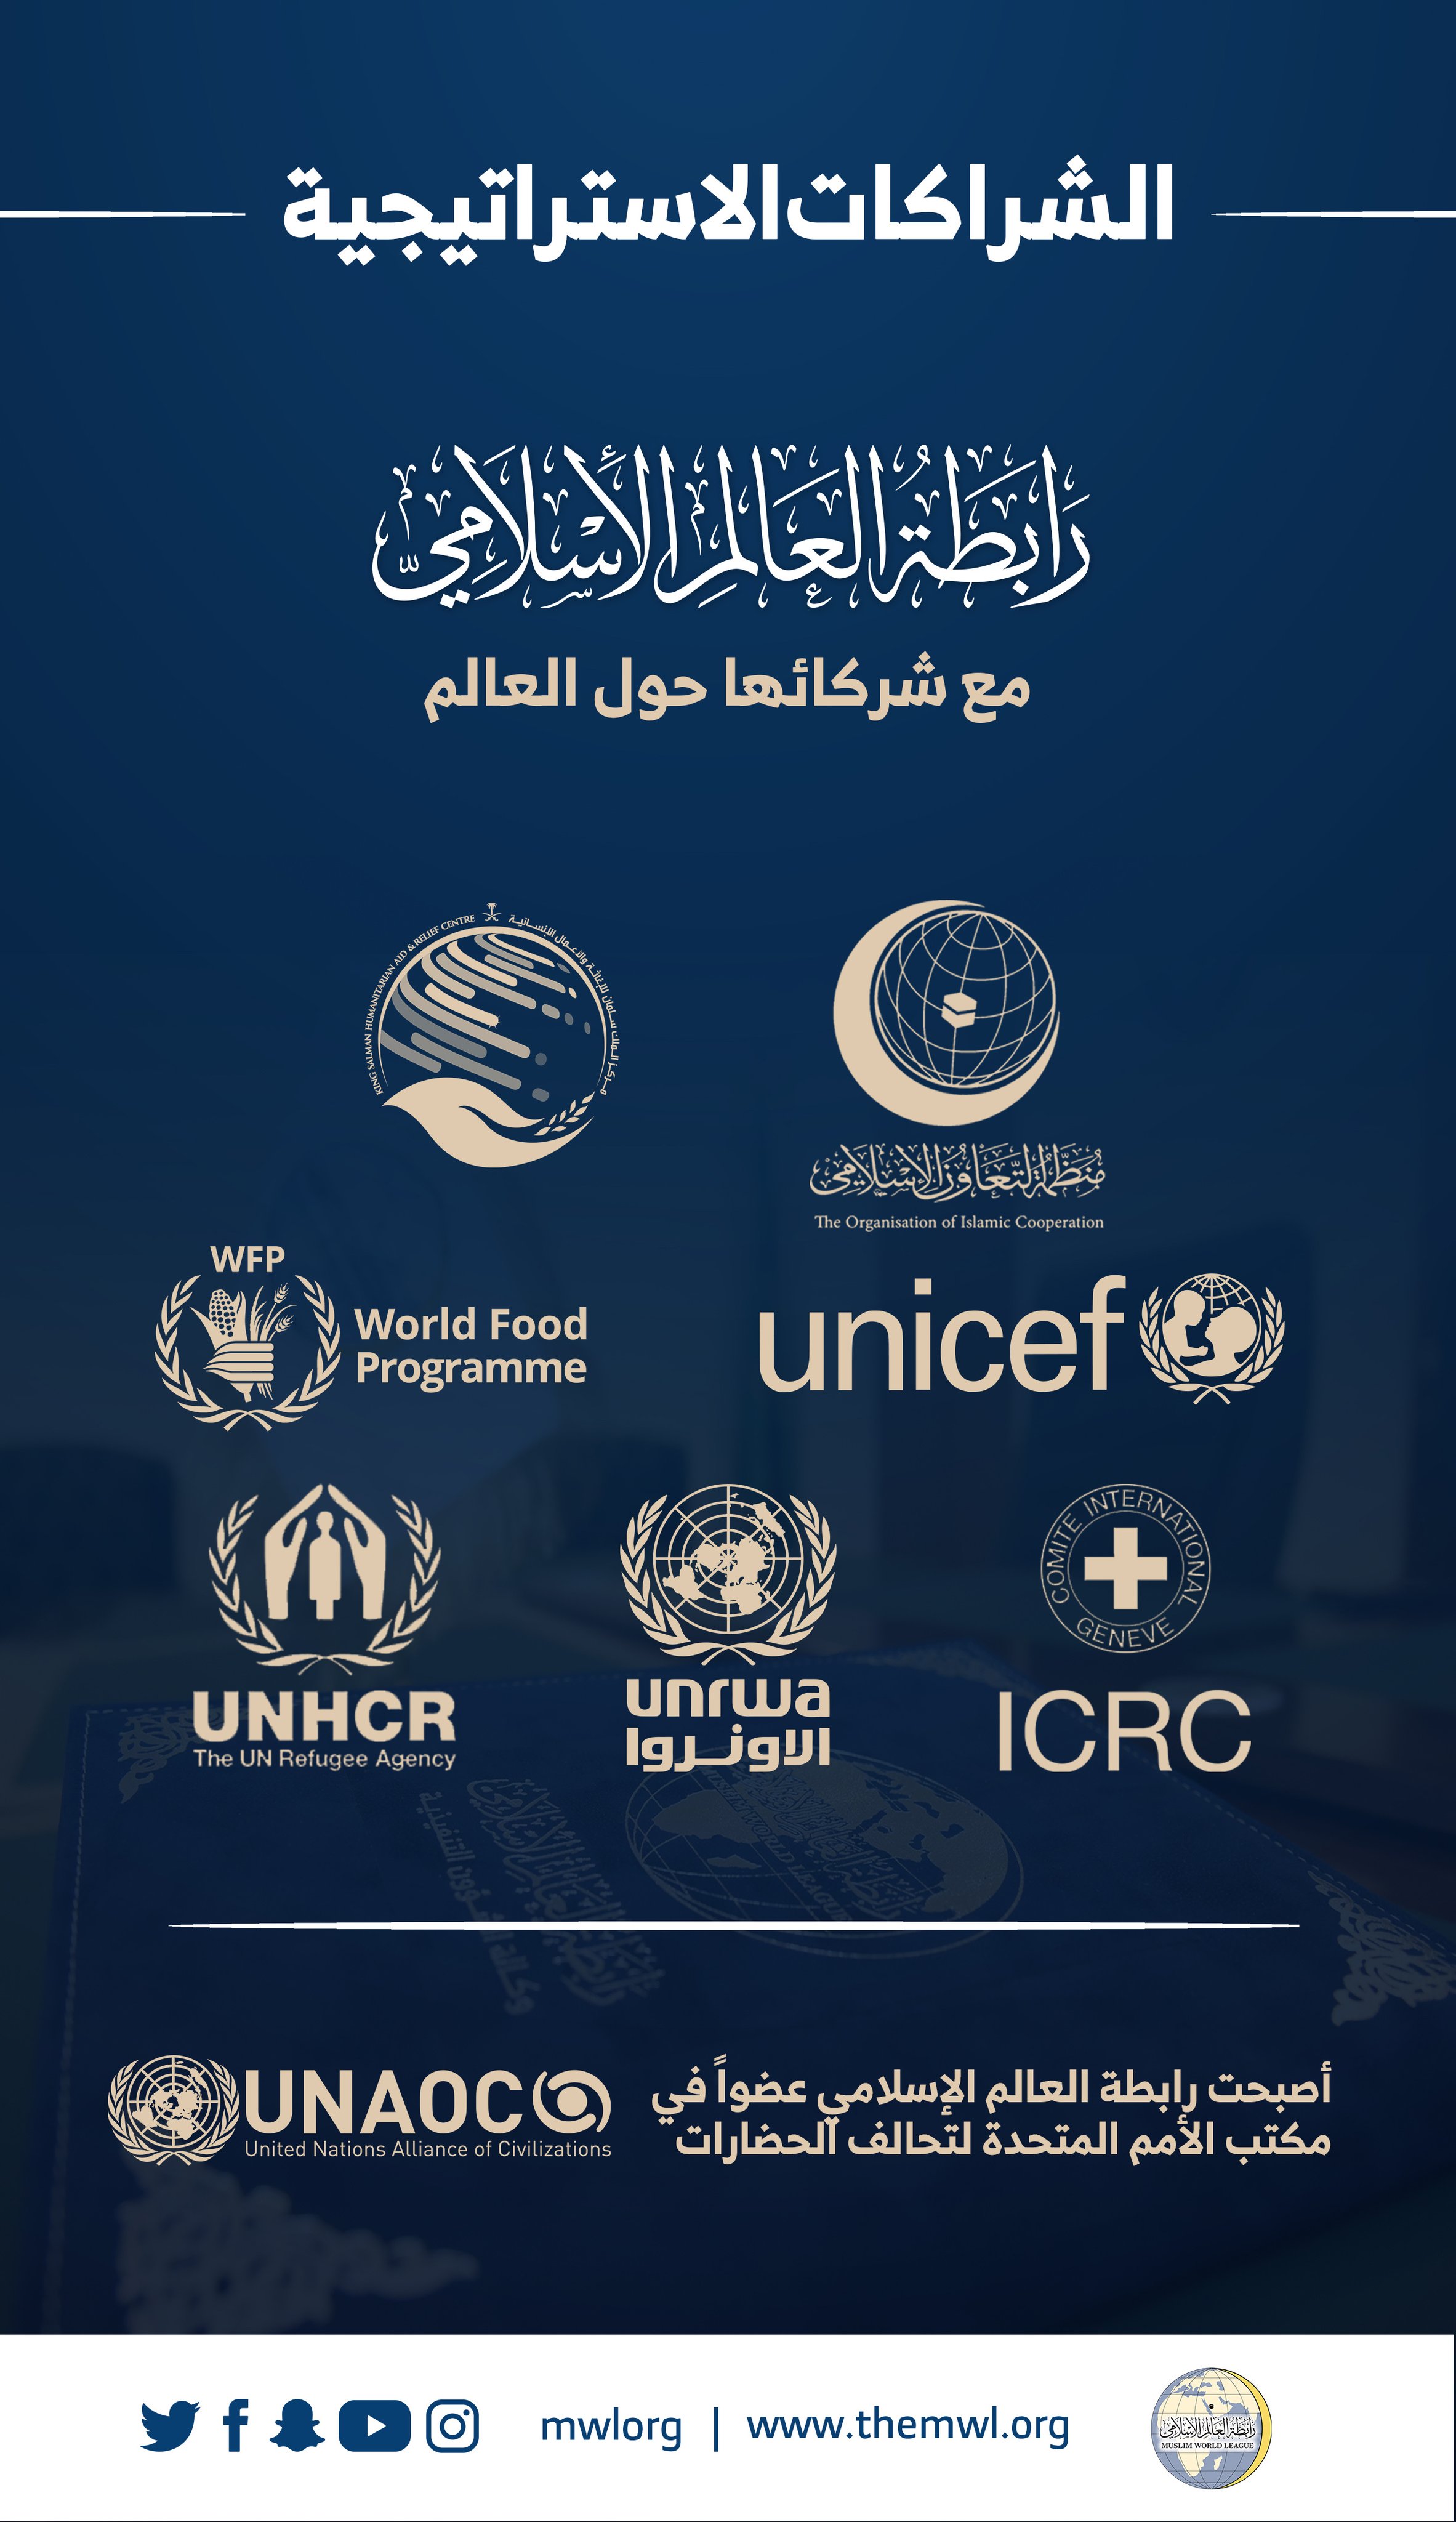 ‏شراكات استراتيجية عالمية تعقدها رابطة العالم الإسلامي‬⁩ لإسهام في خدمة الإنسانية جمعاء :